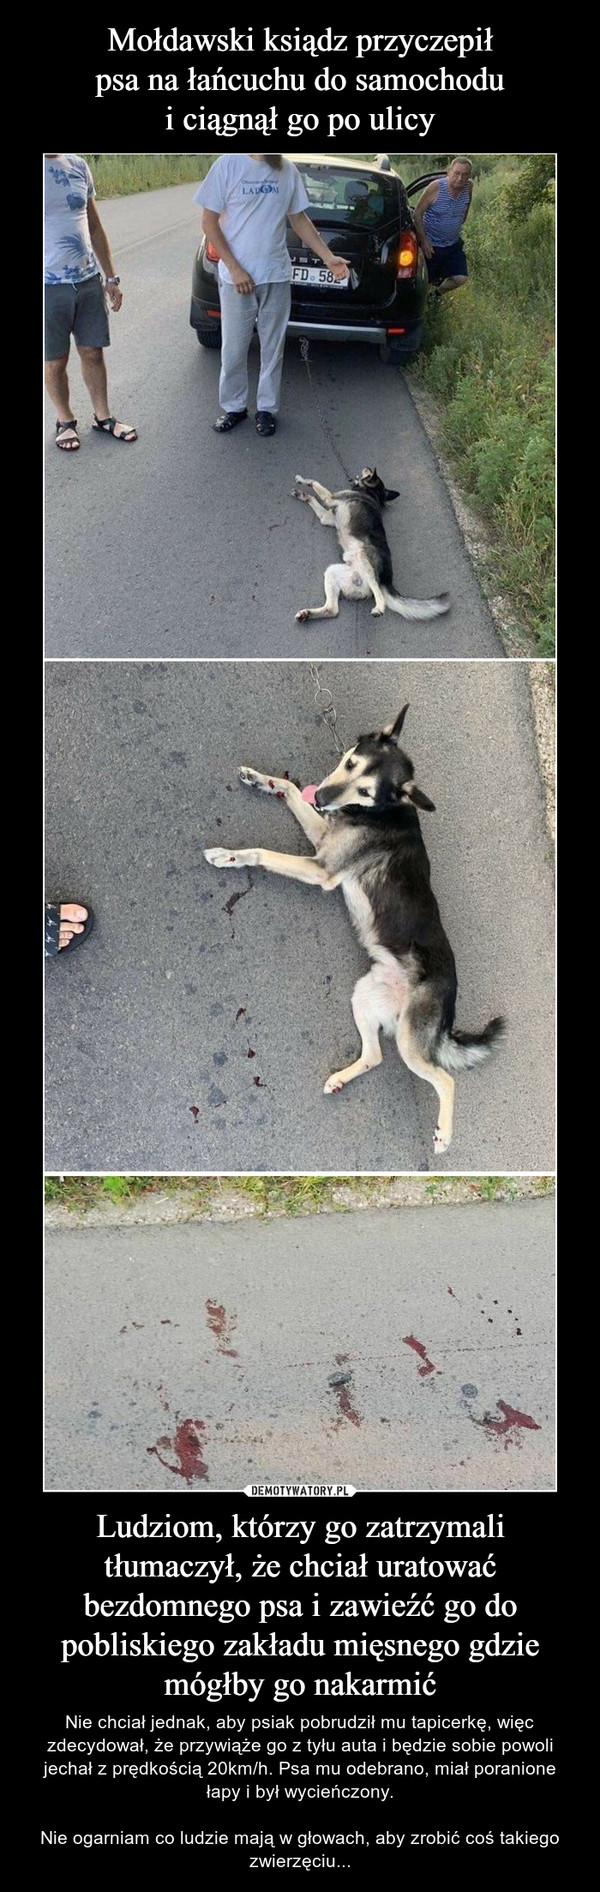 Mołdawski ksiądz przyczepił
psa na łańcuchu do samochodu
i ciągnął go po ulicy Ludziom, którzy go zatrzymali tłumaczył, że chciał uratować bezdomnego psa i zawieźć go do pobliskiego zakładu mięsnego gdzie mógłby go nakarmić